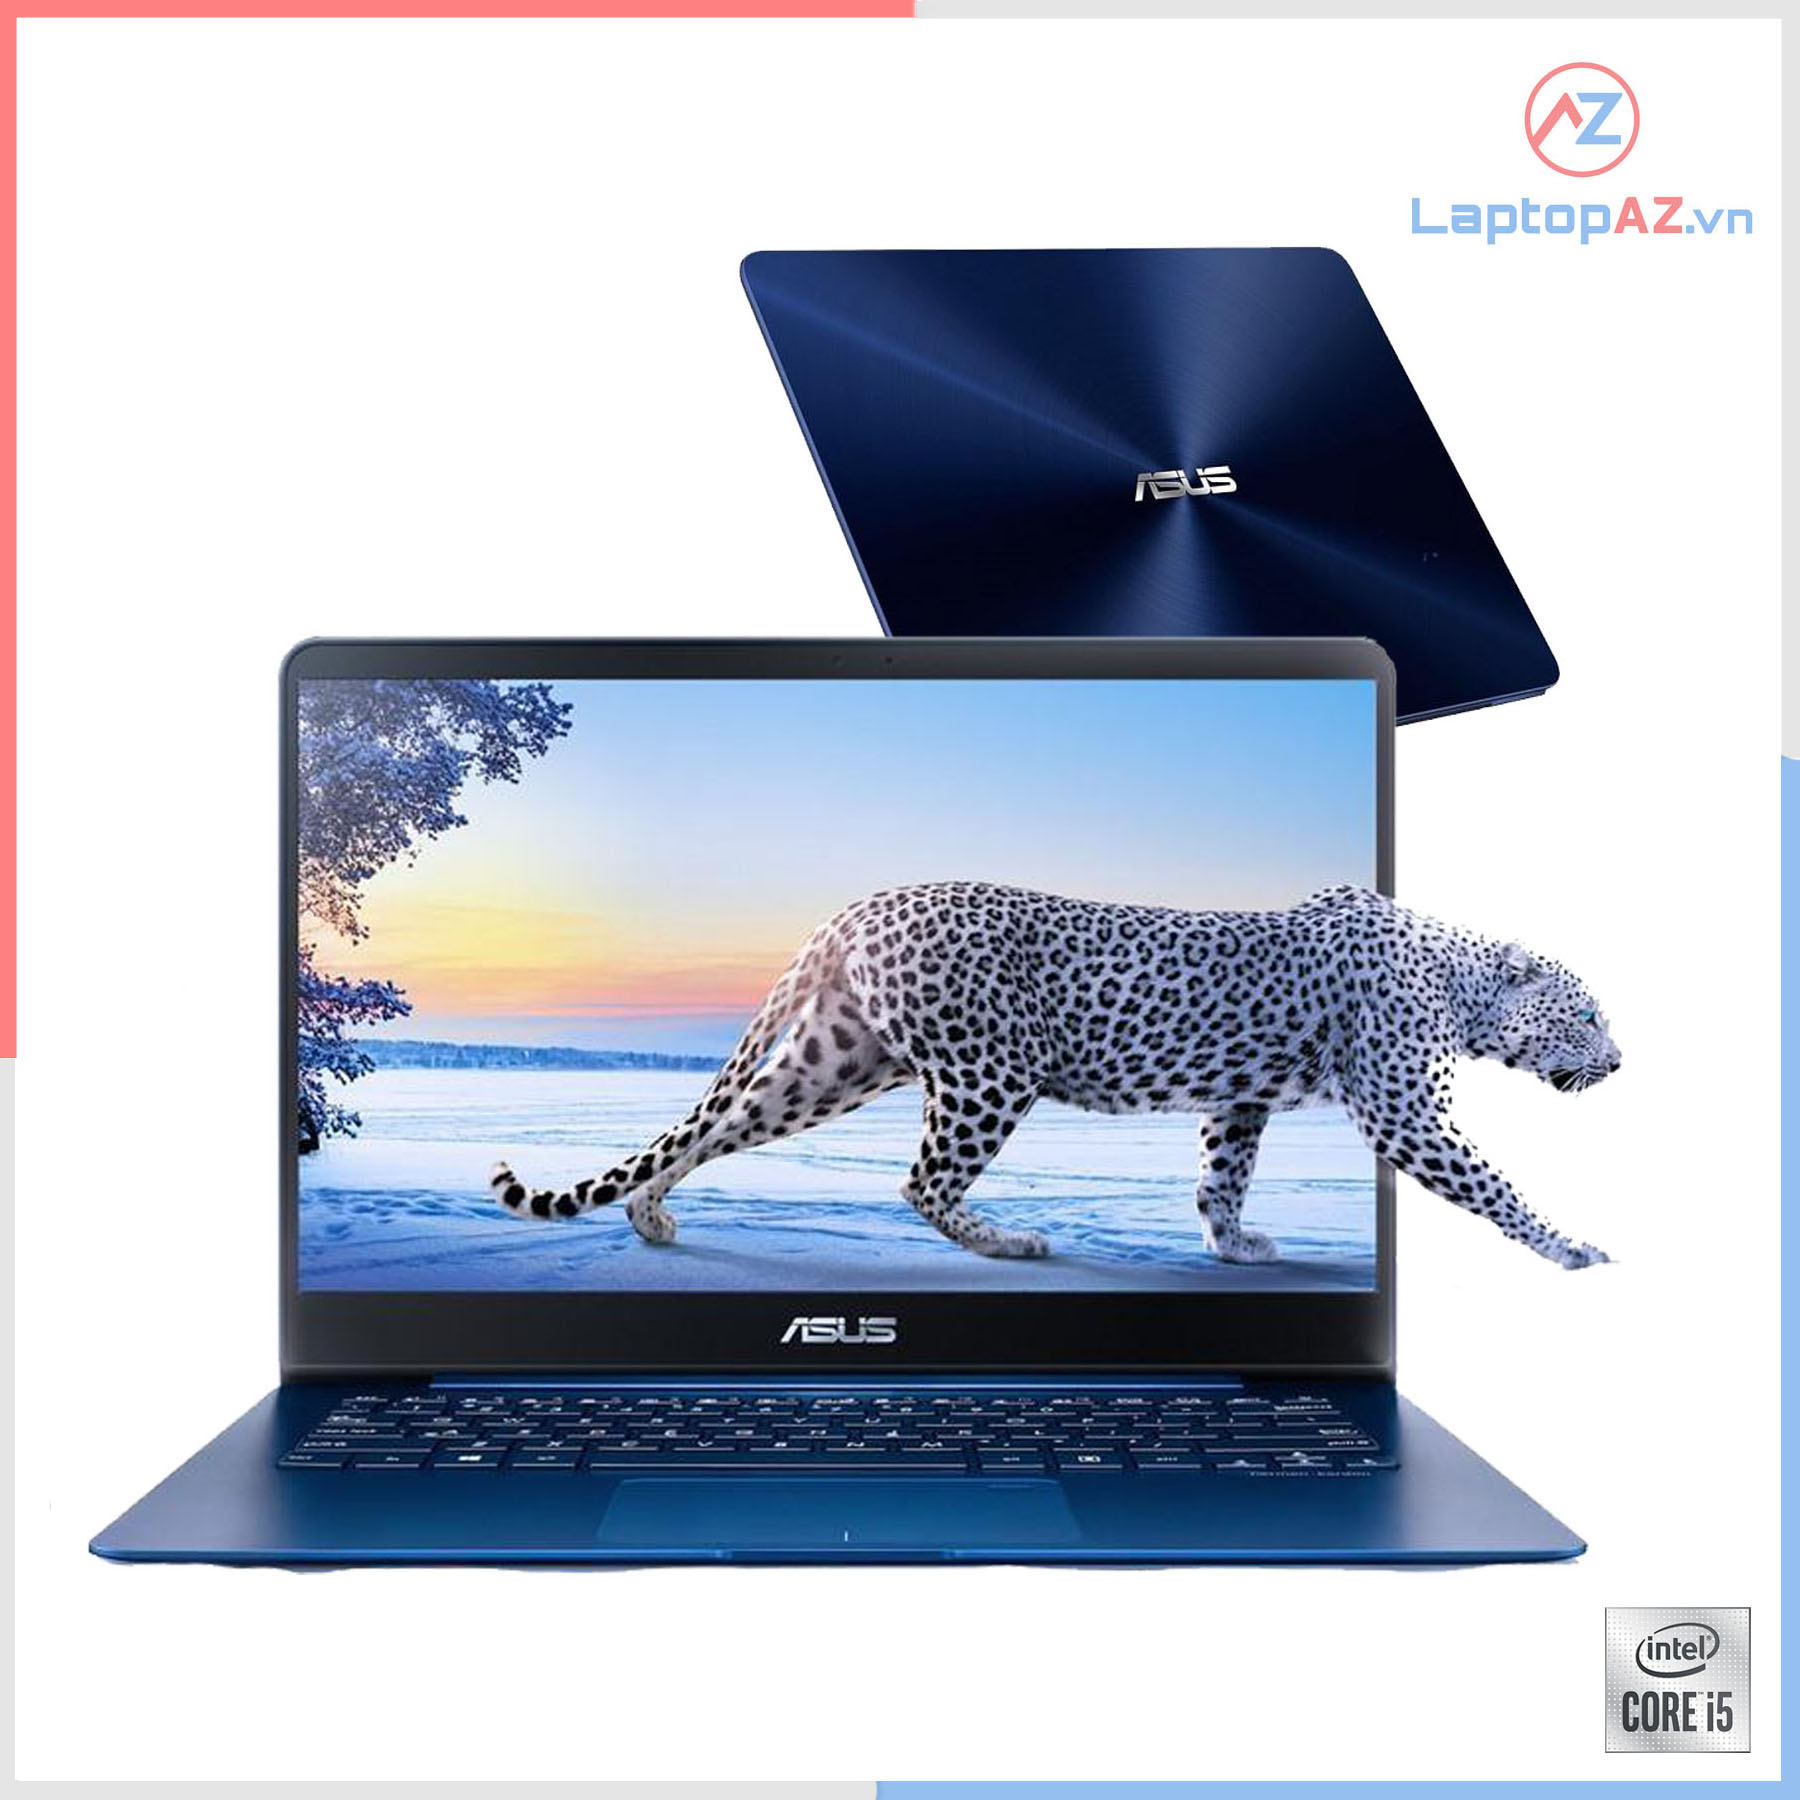 Laptop Asus ZenBook UX430UA-GV162T (Core i5- 7200U, 4GB, 256GB, VGA Intel HD Graphics 620, 14.0 inch Full HD IPS)